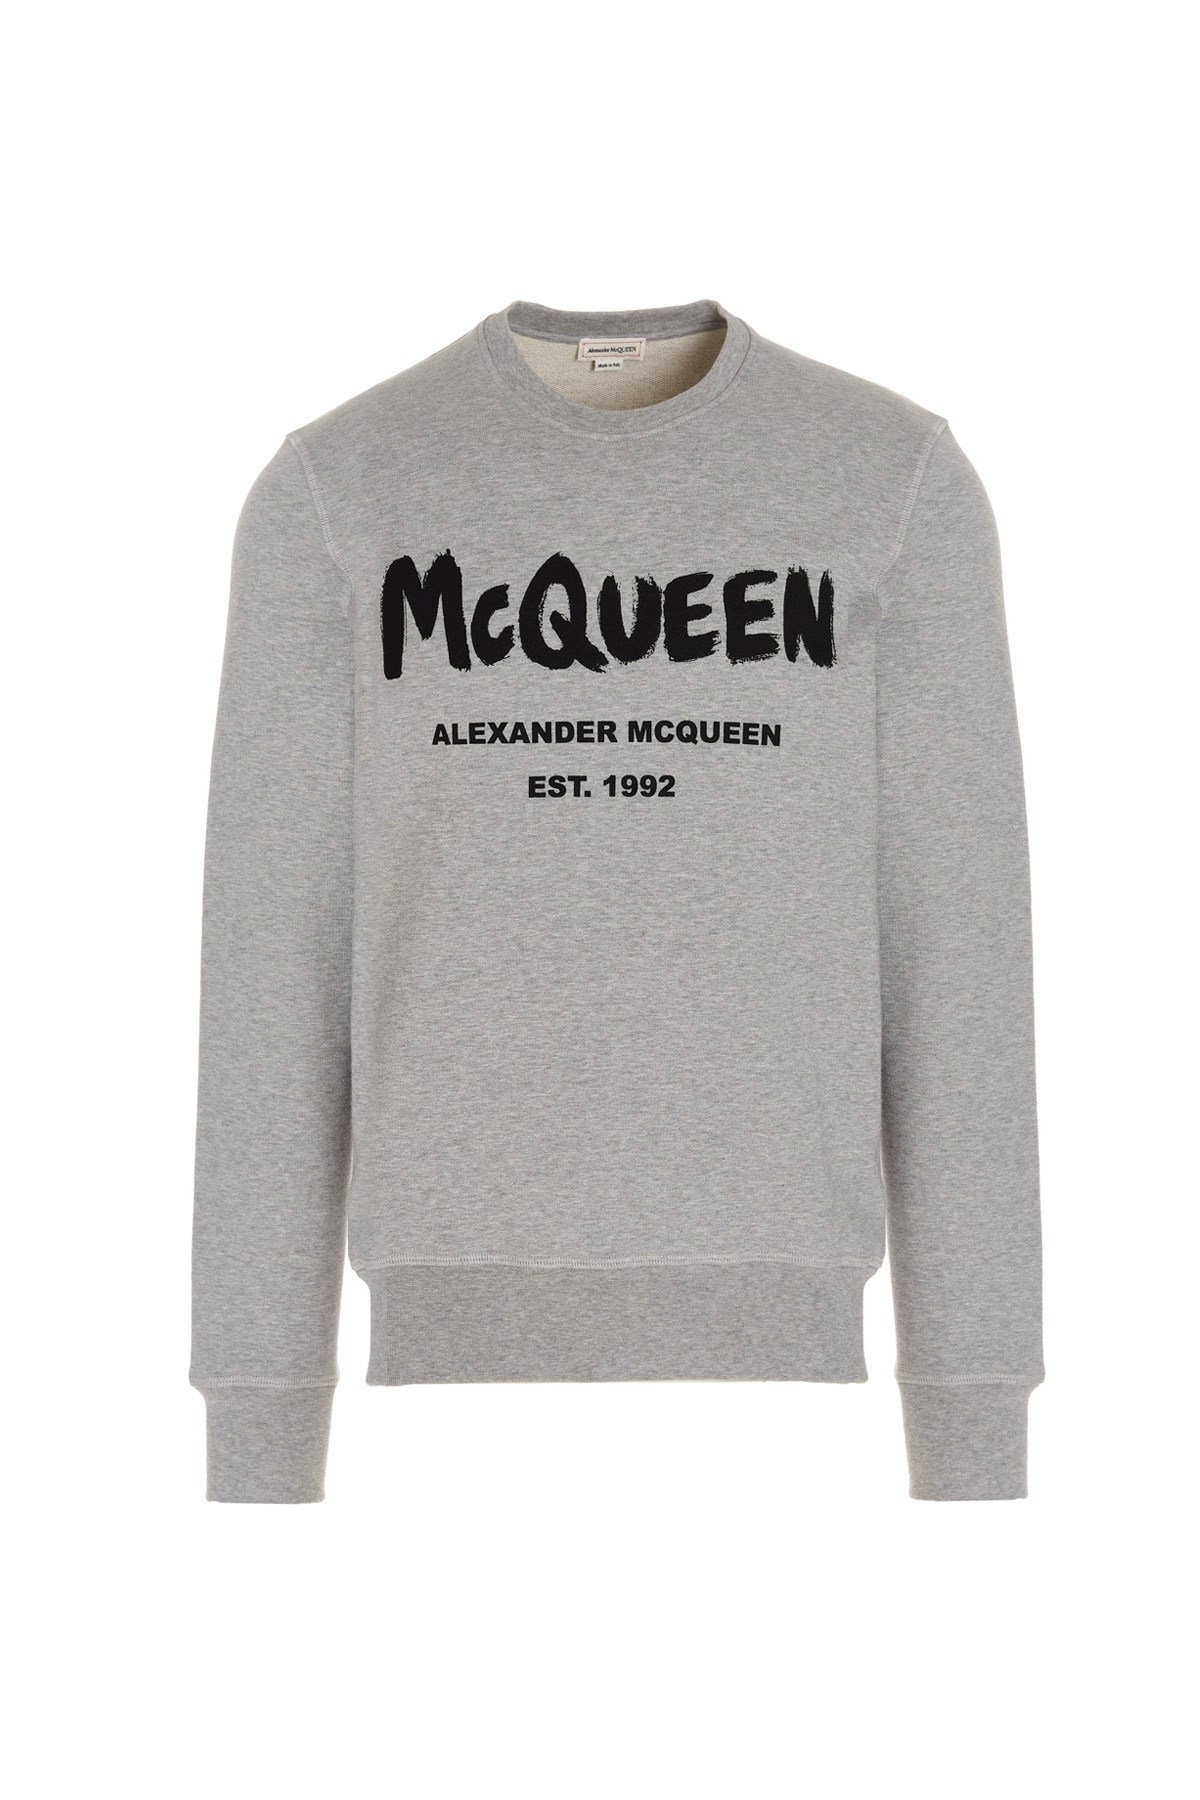 ALEXANDER MCQUEEN Logo Print Sweatshirt